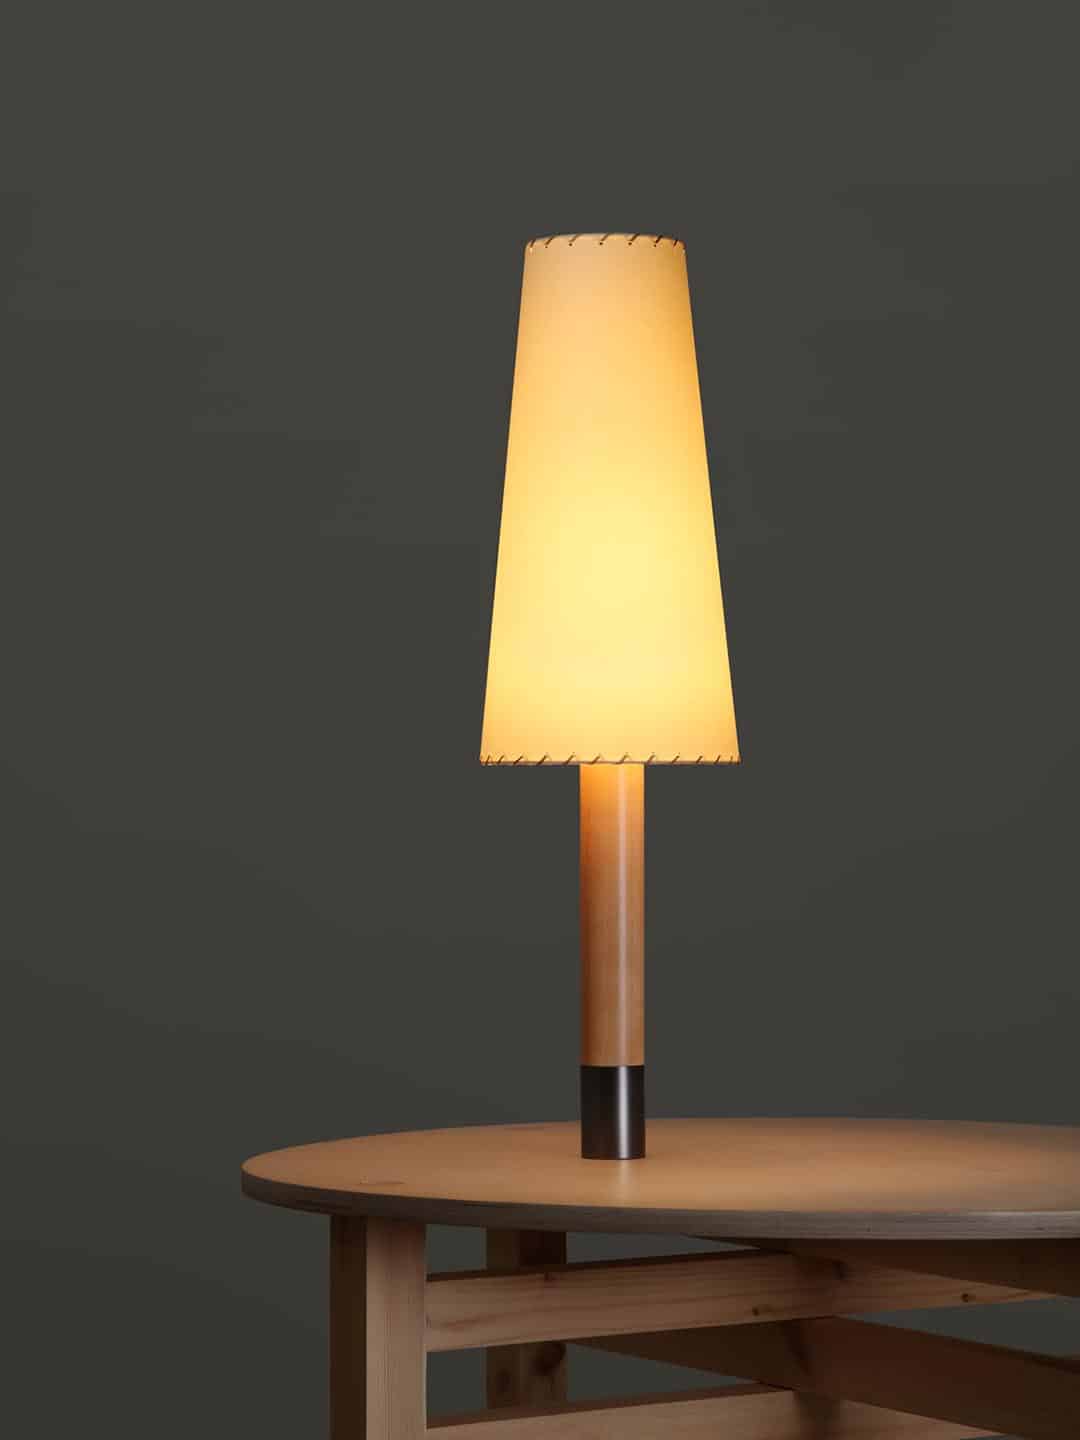 Современная настольная лампа Santa Cole Basica M2 в темном интерьере